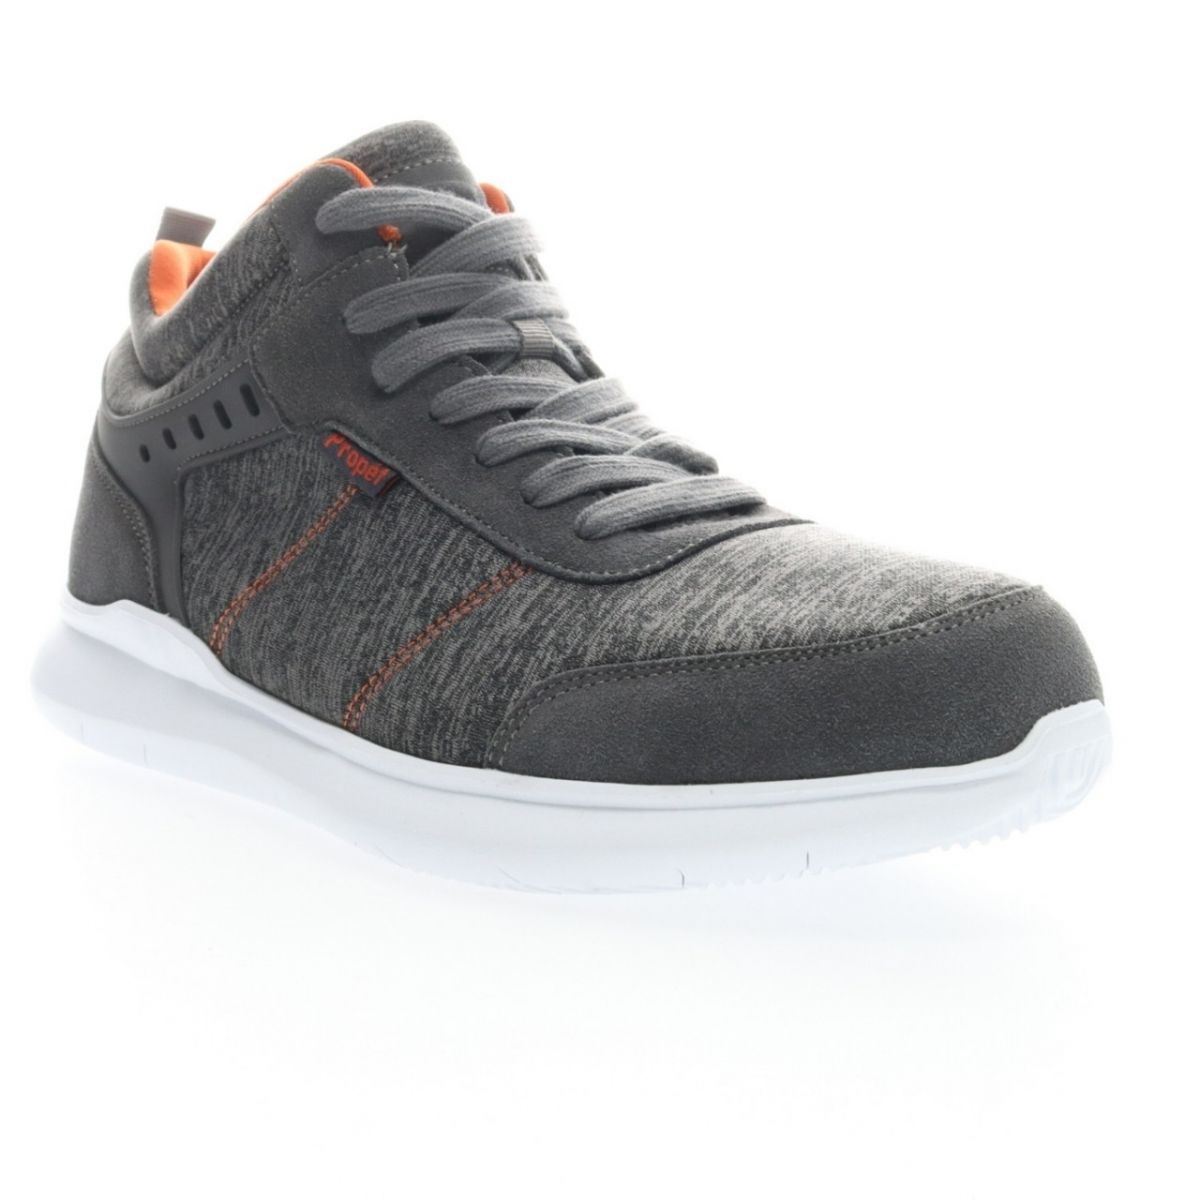 Propet Men's Viator Hi Sneaker Grey/Orange - MAA112MGOR Grey/orange - Grey/orange, 16 X-Wide